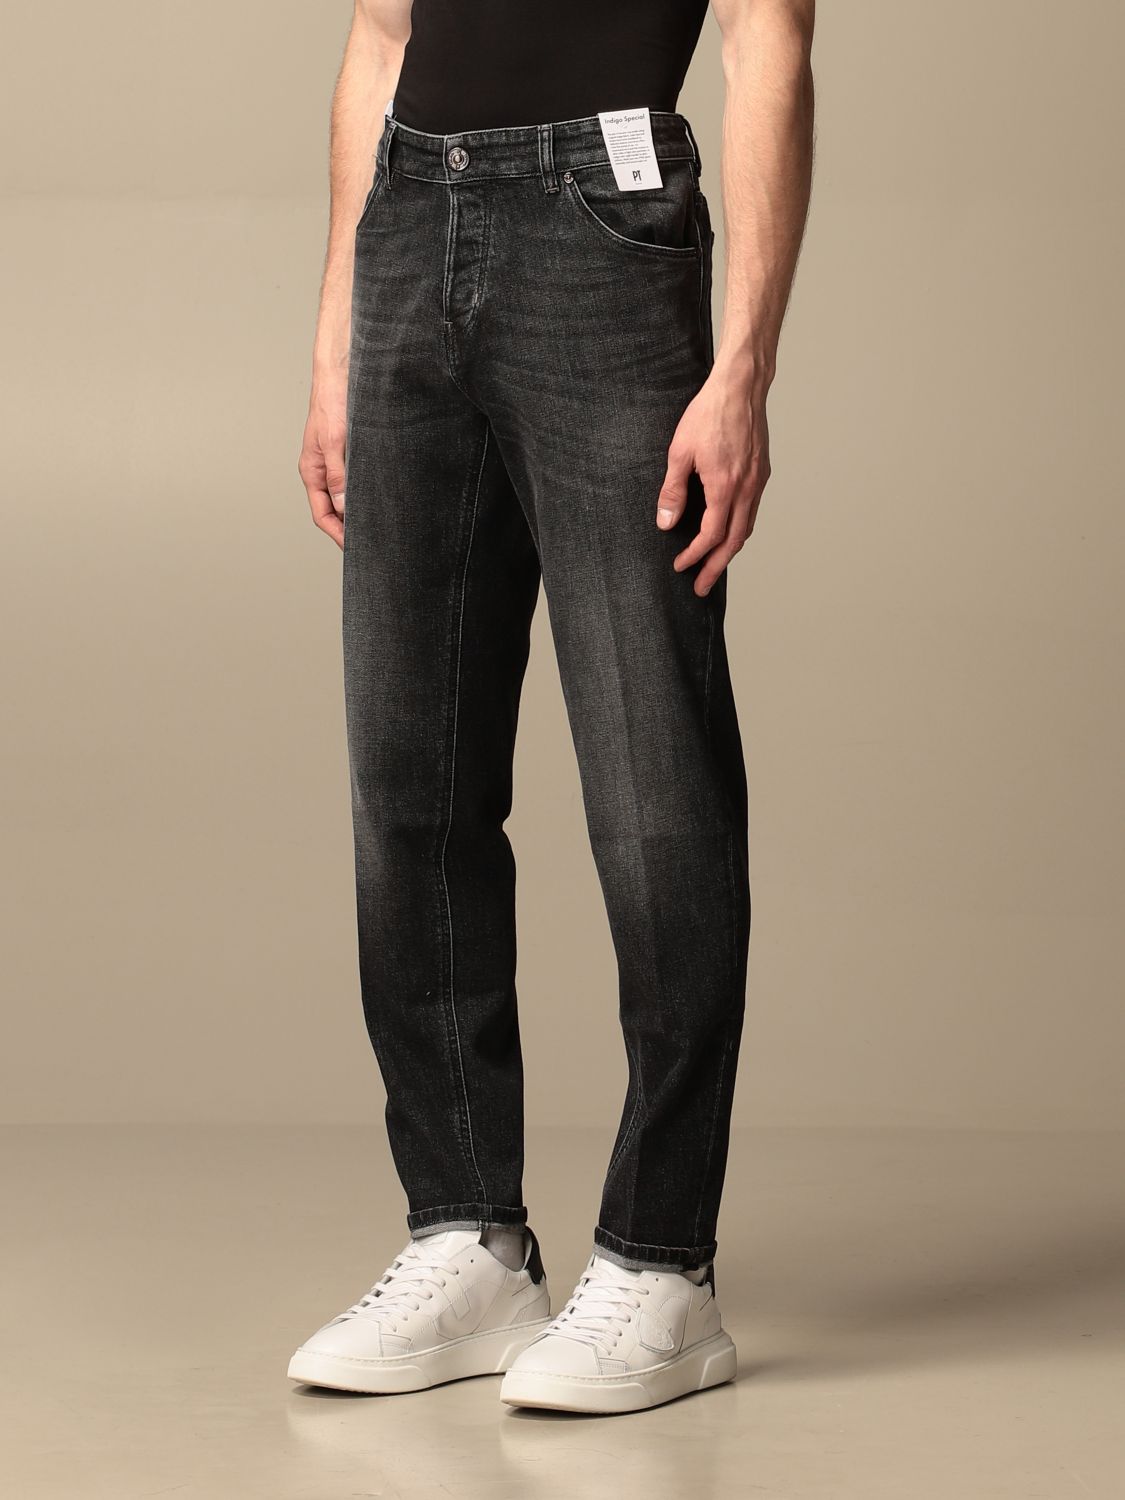 Jeans Pt: Jeans men Pt grey 3